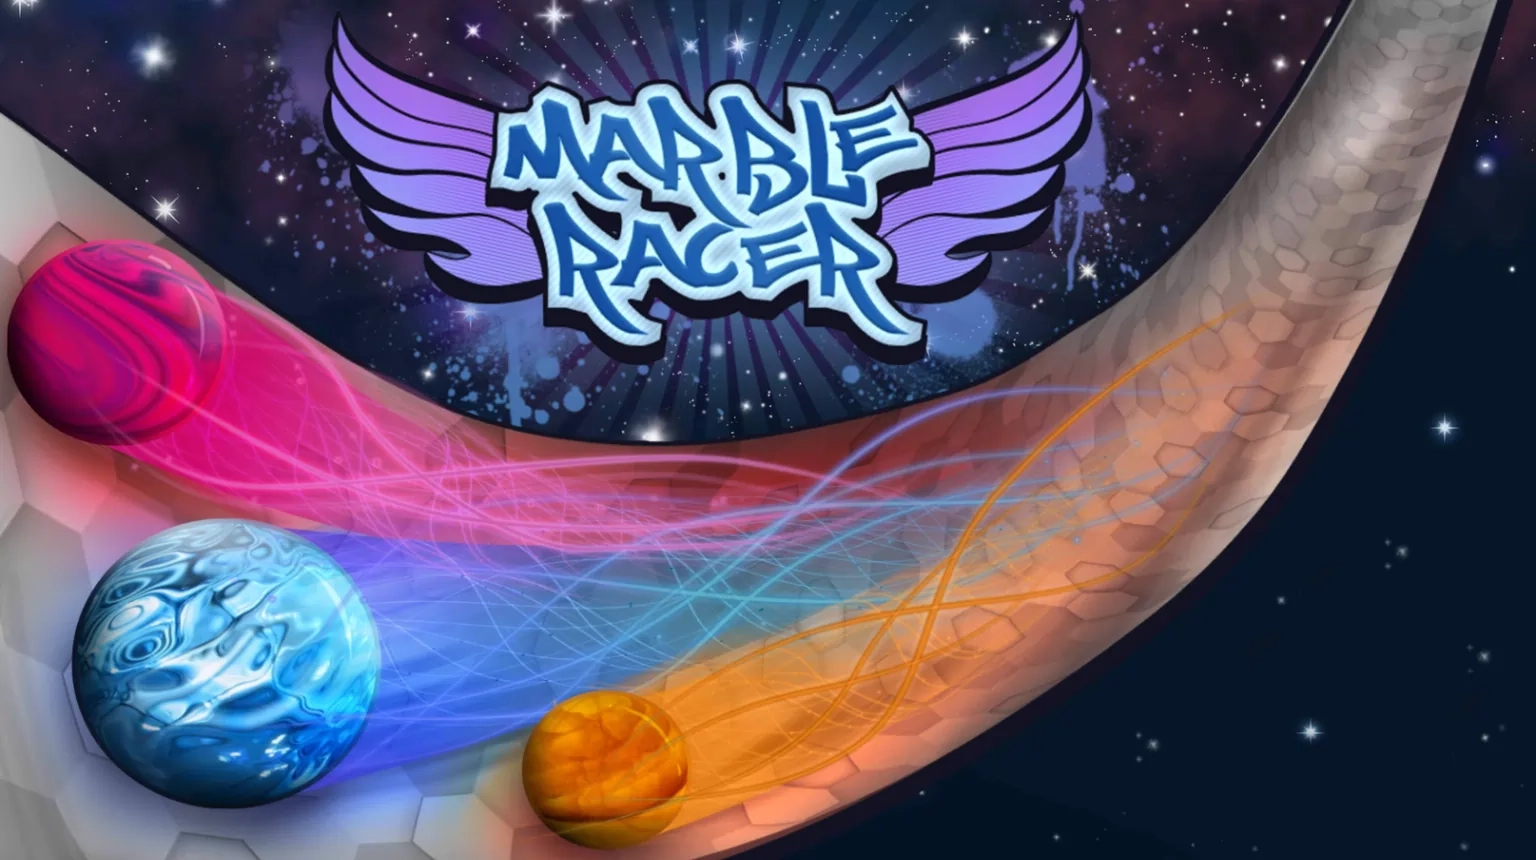 Marble Racer: Corrida de bolinhas de gude com um extra